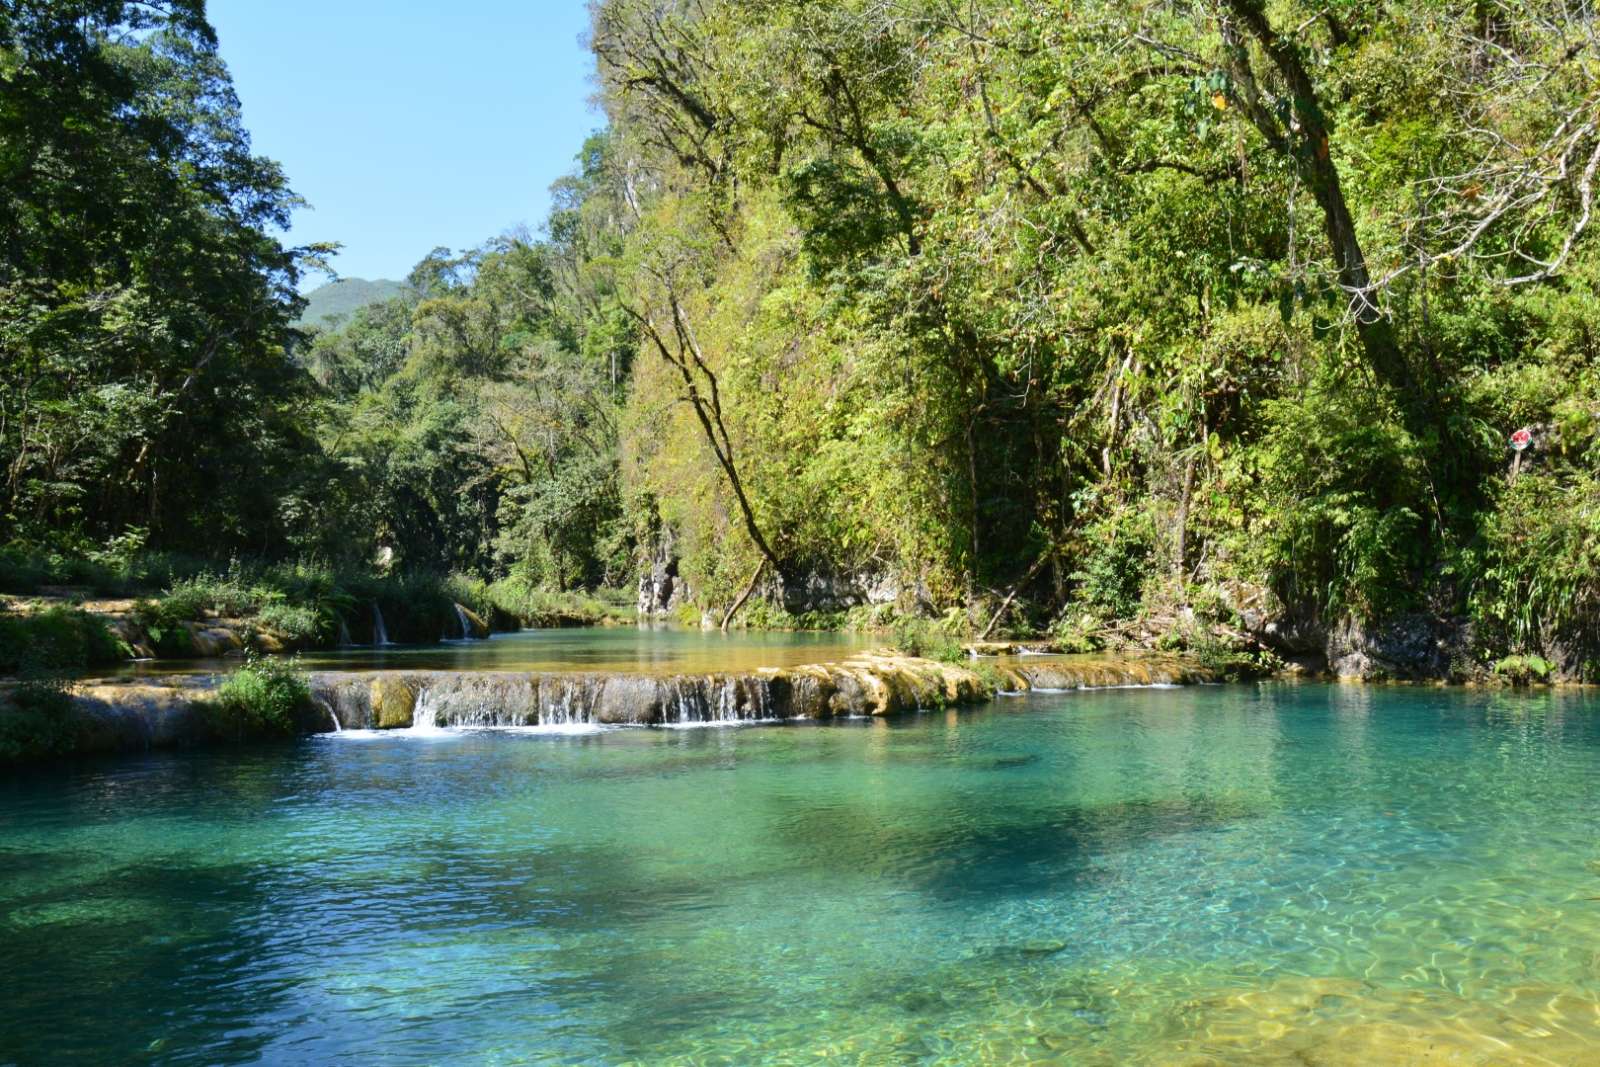 River at Semuc Champey in Guatemala